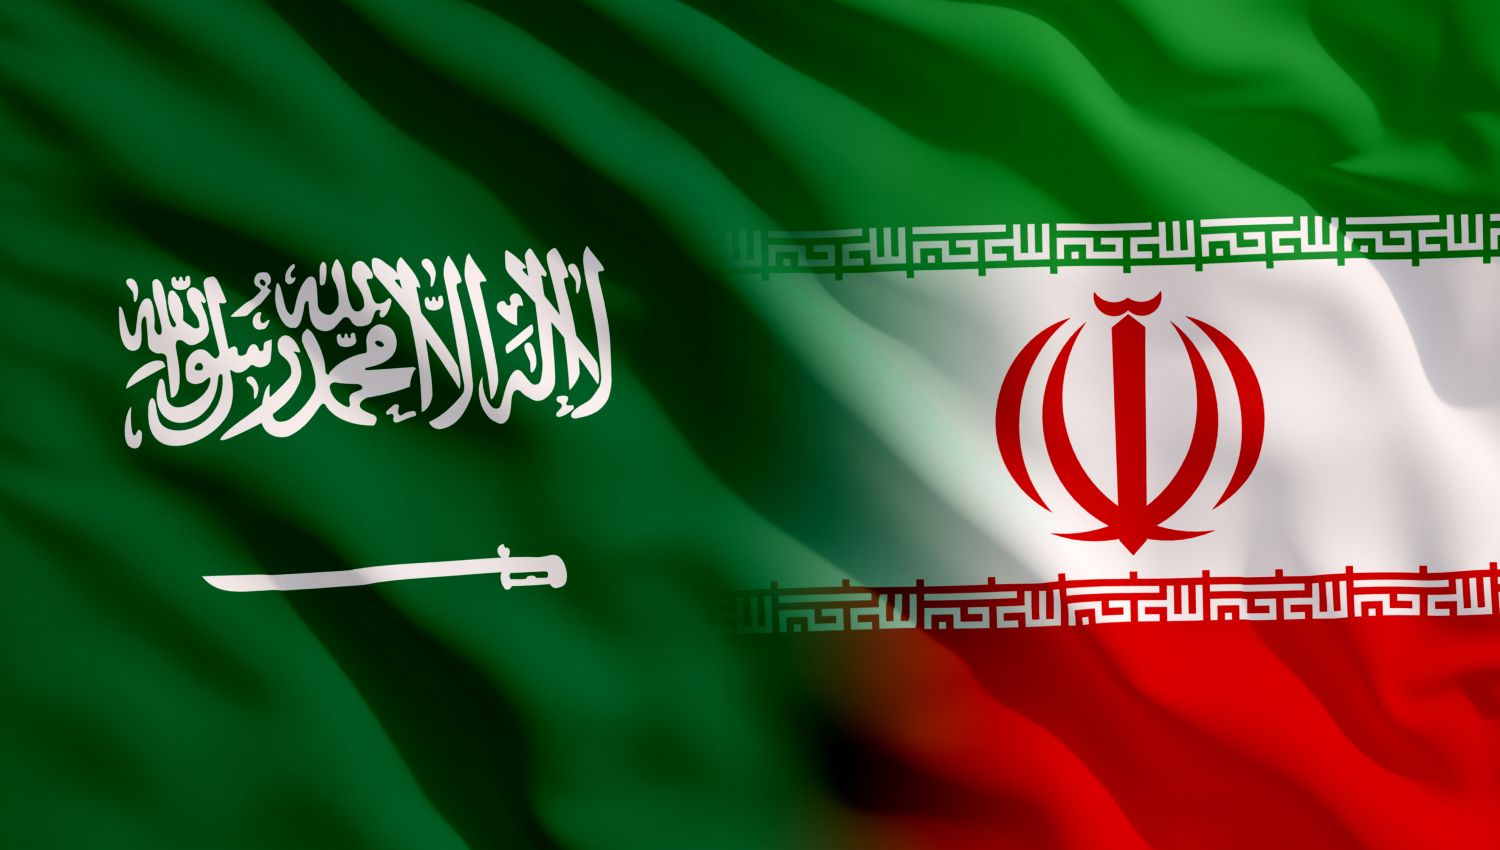 بعد الاجتماع الأمني بين إيران والسعودية: ترتيبات جديدة للمنطقة!